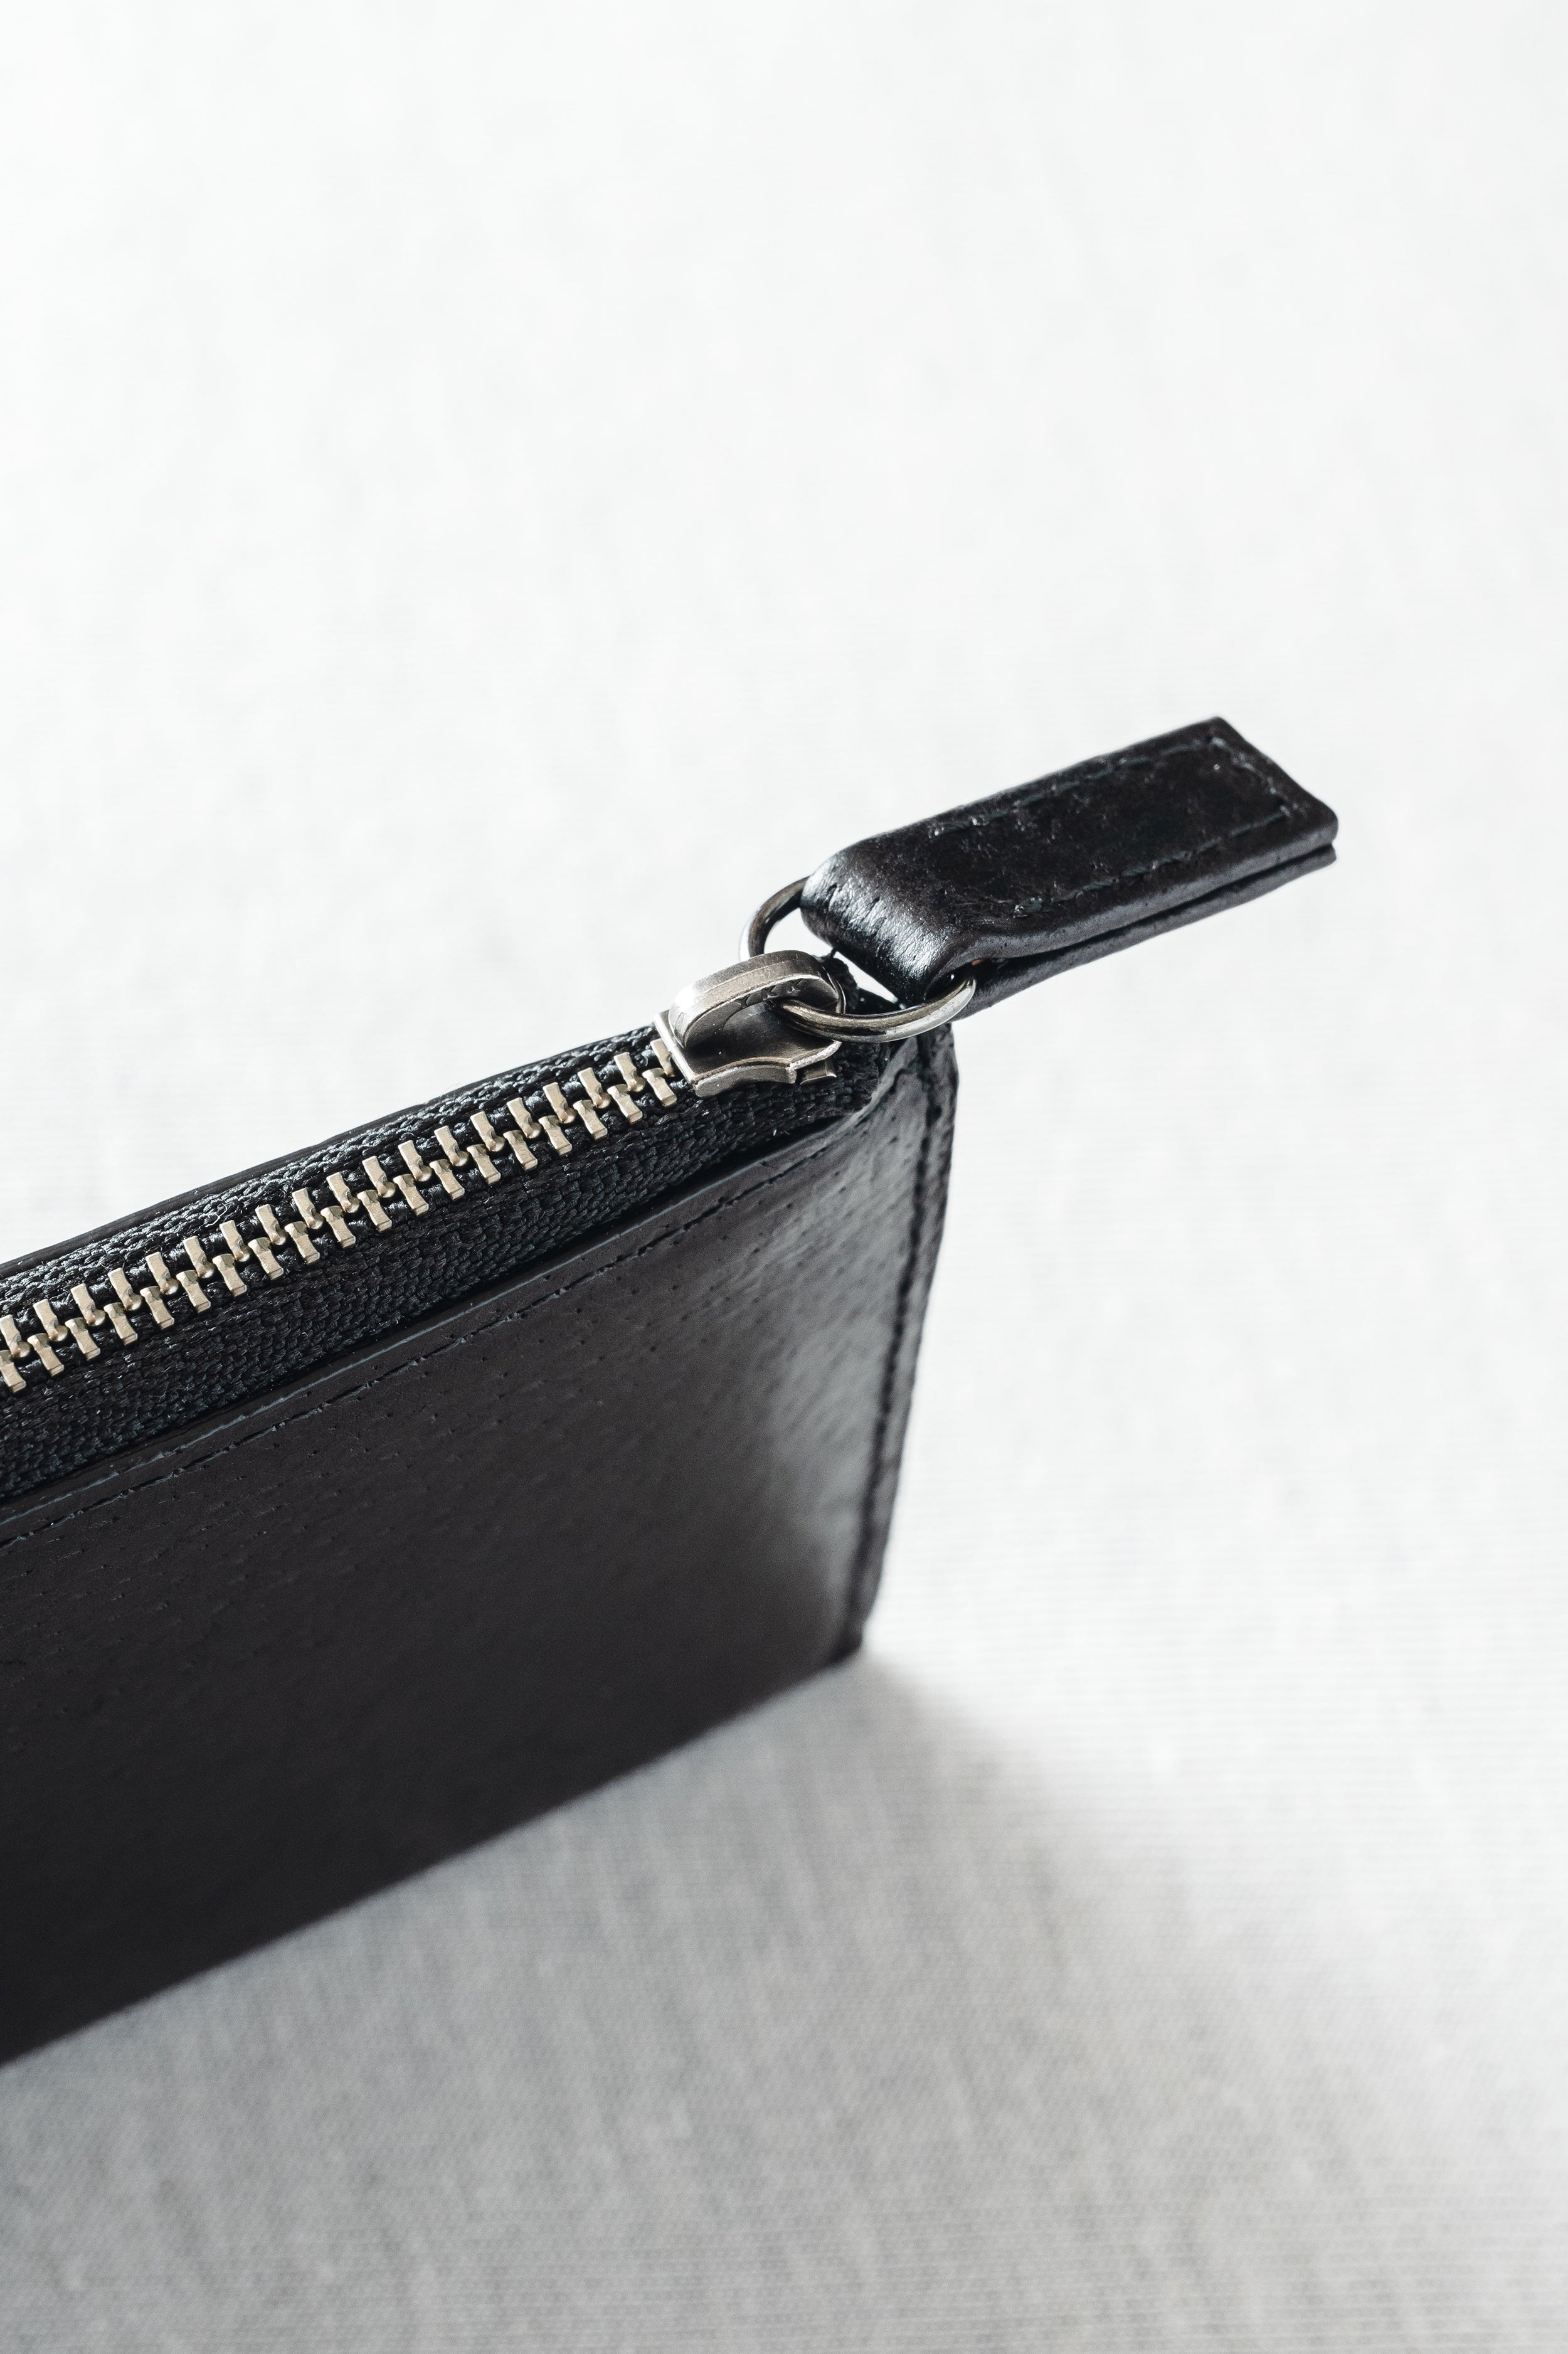 L Zipper mini Wallet  Lファスナーミニ財布